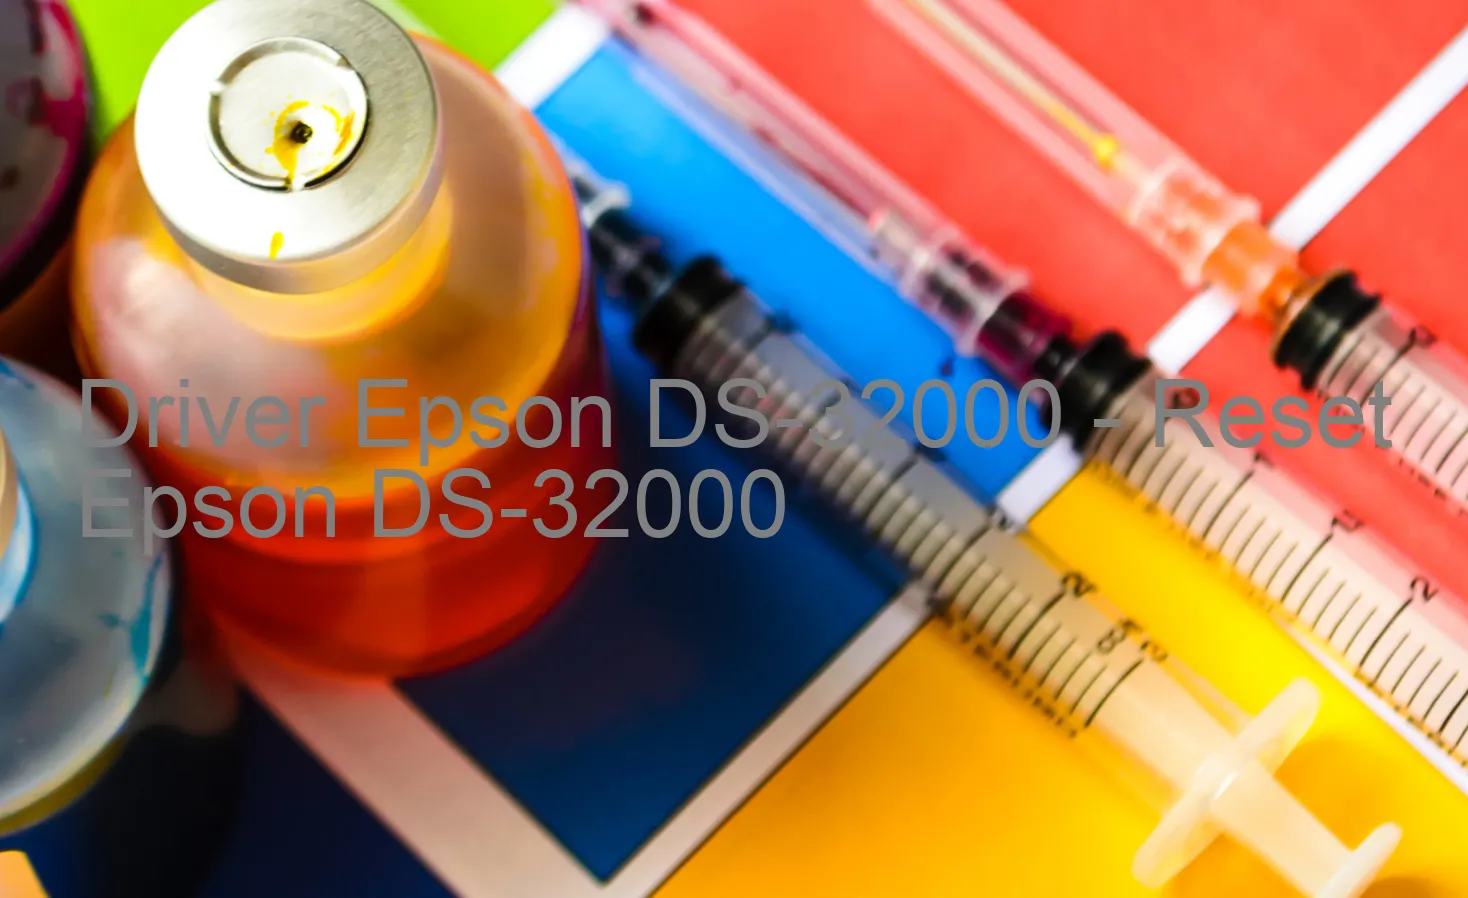 Epson DS-32000のドライバー、Epson DS-32000のリセットソフトウェア